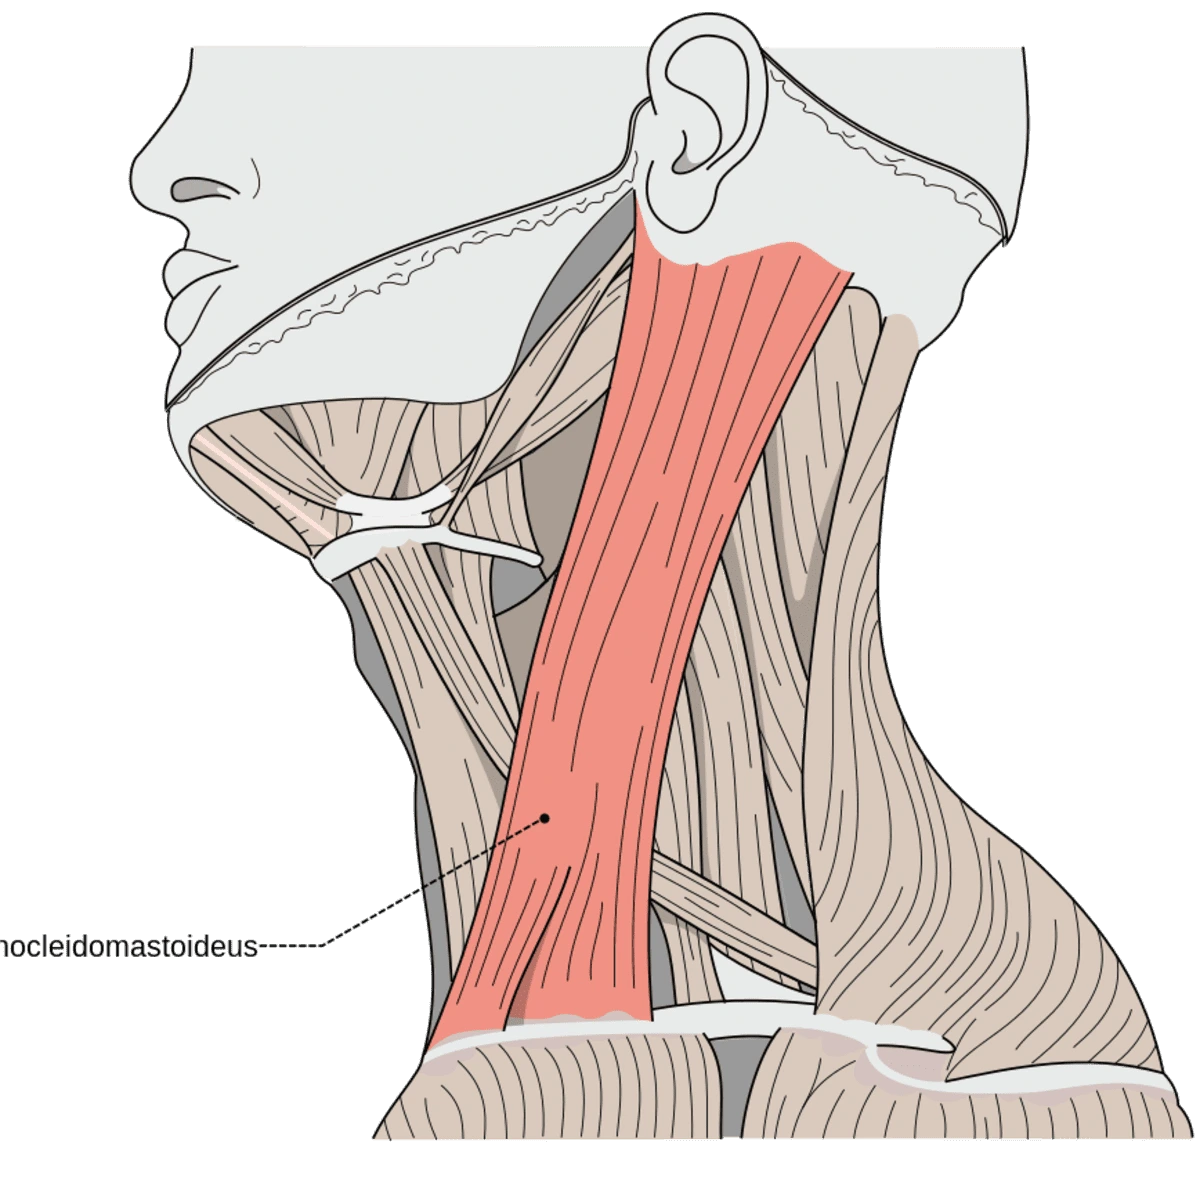 sternocleidomastoid-muscle pain